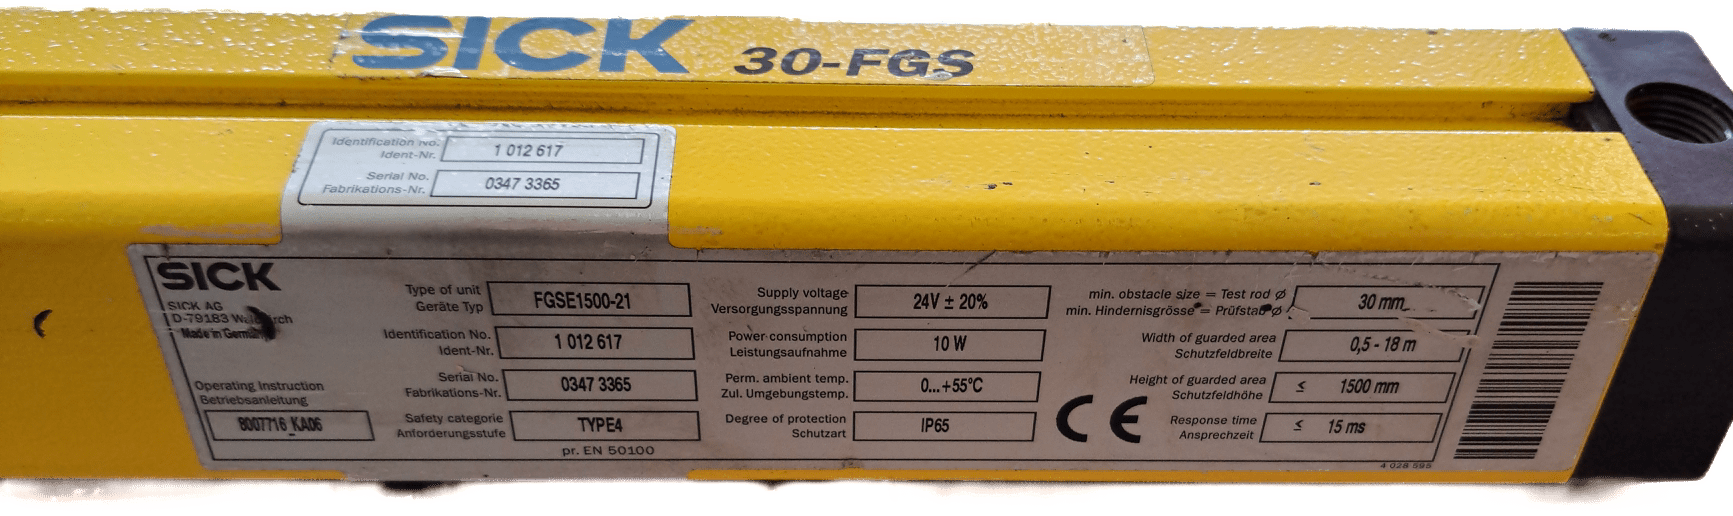 Sick Sicherheitslichtschranke Empfänger FGSE1500-21 / 1012617 - #product_category# | Klenk Maschinenhandel